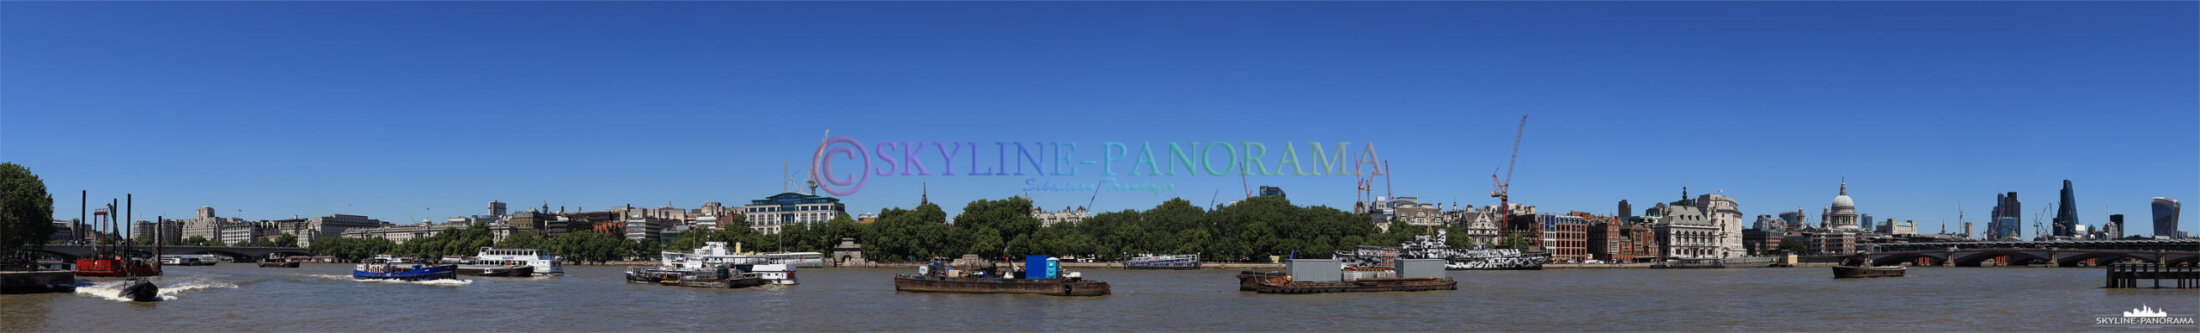 London Panorama (p_00895)